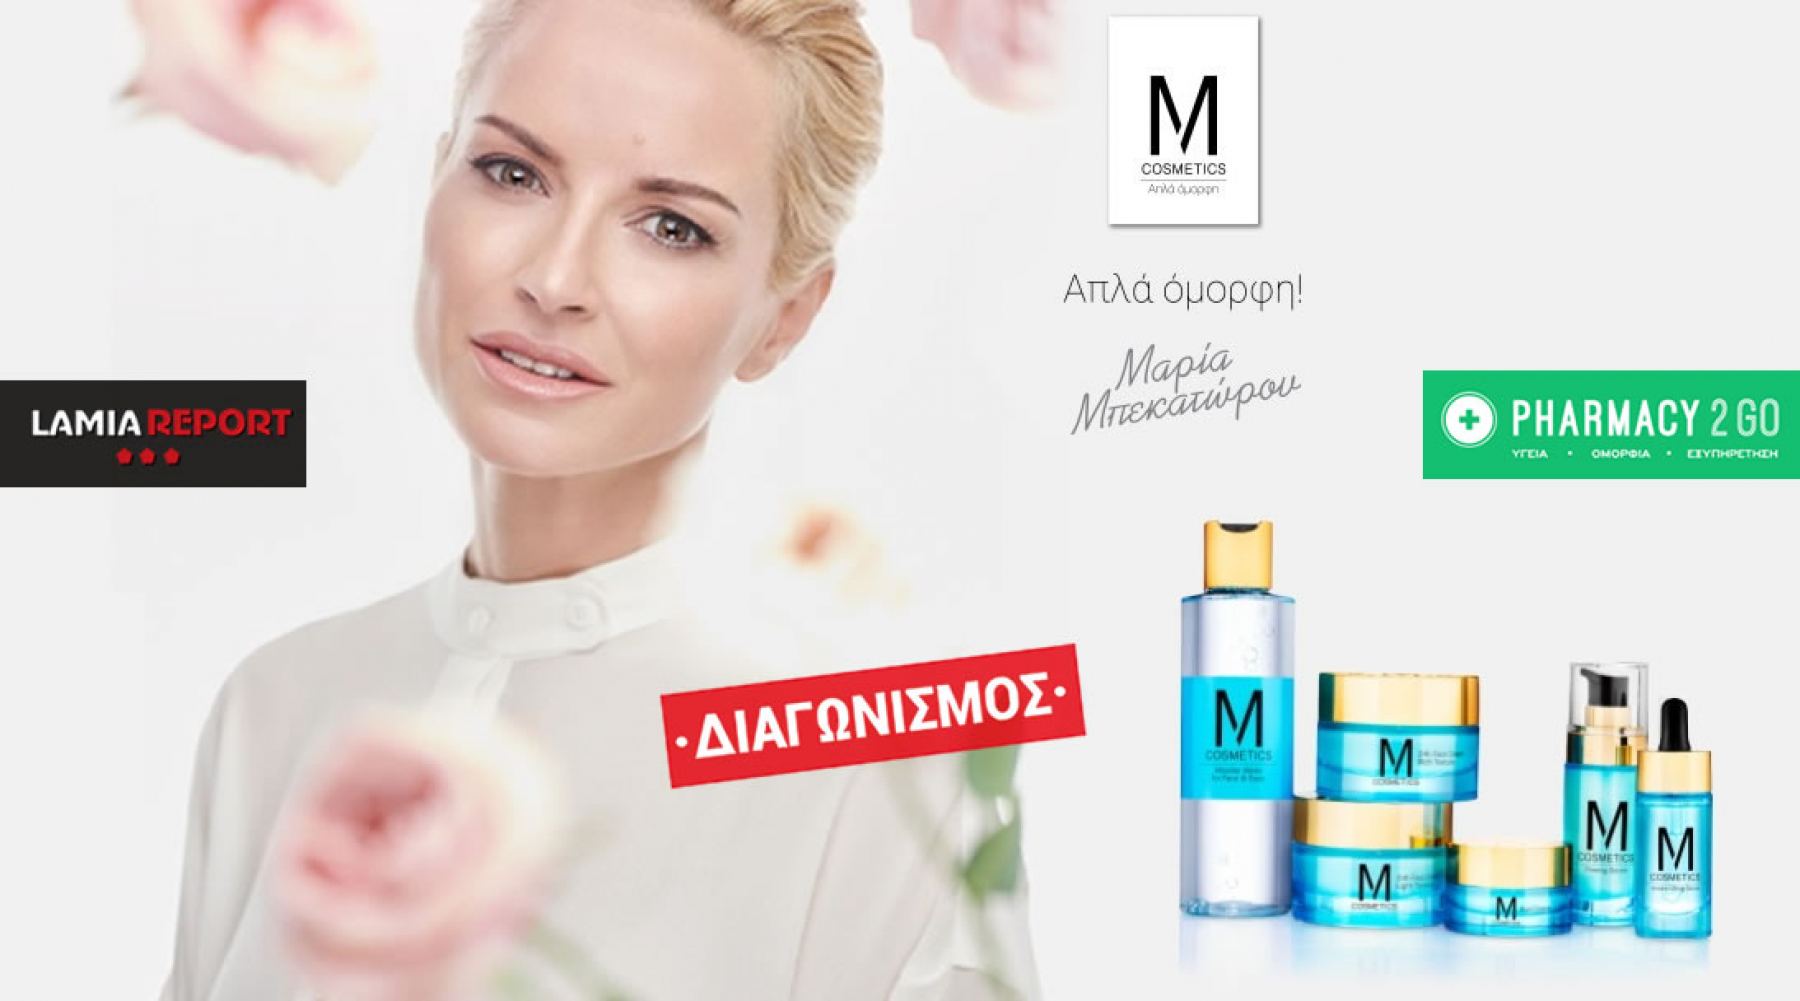 Διαγωνισμός Instagram: Κέρδισε τη μοναδική σειρά περιποίησης της Μαρίας Μπεκατώρου, «M Cosmetics»